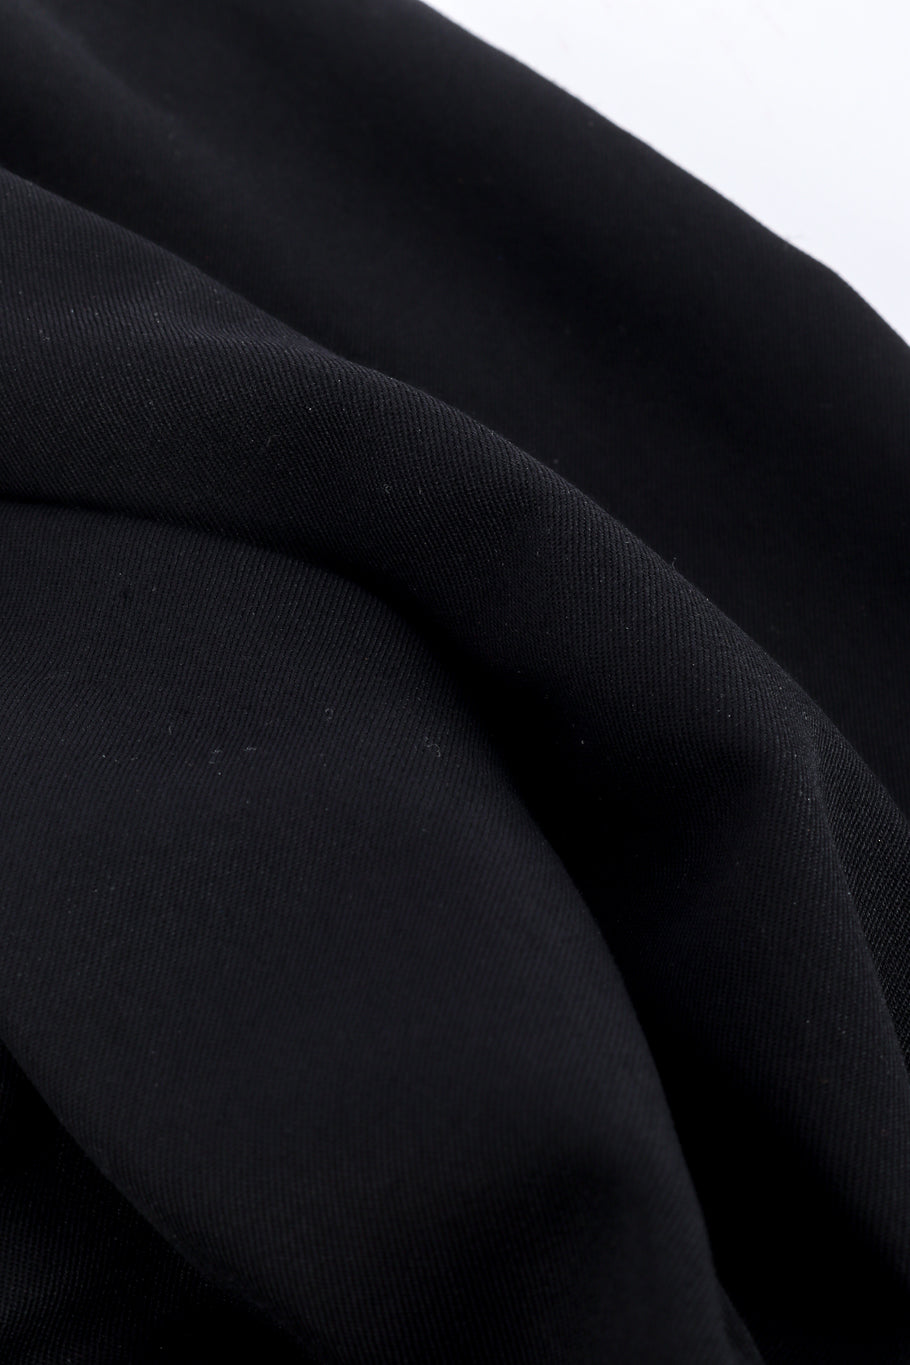 Junya Watanabe 2003 S/S Parachute Harness Jacket fabric closeup @recessla